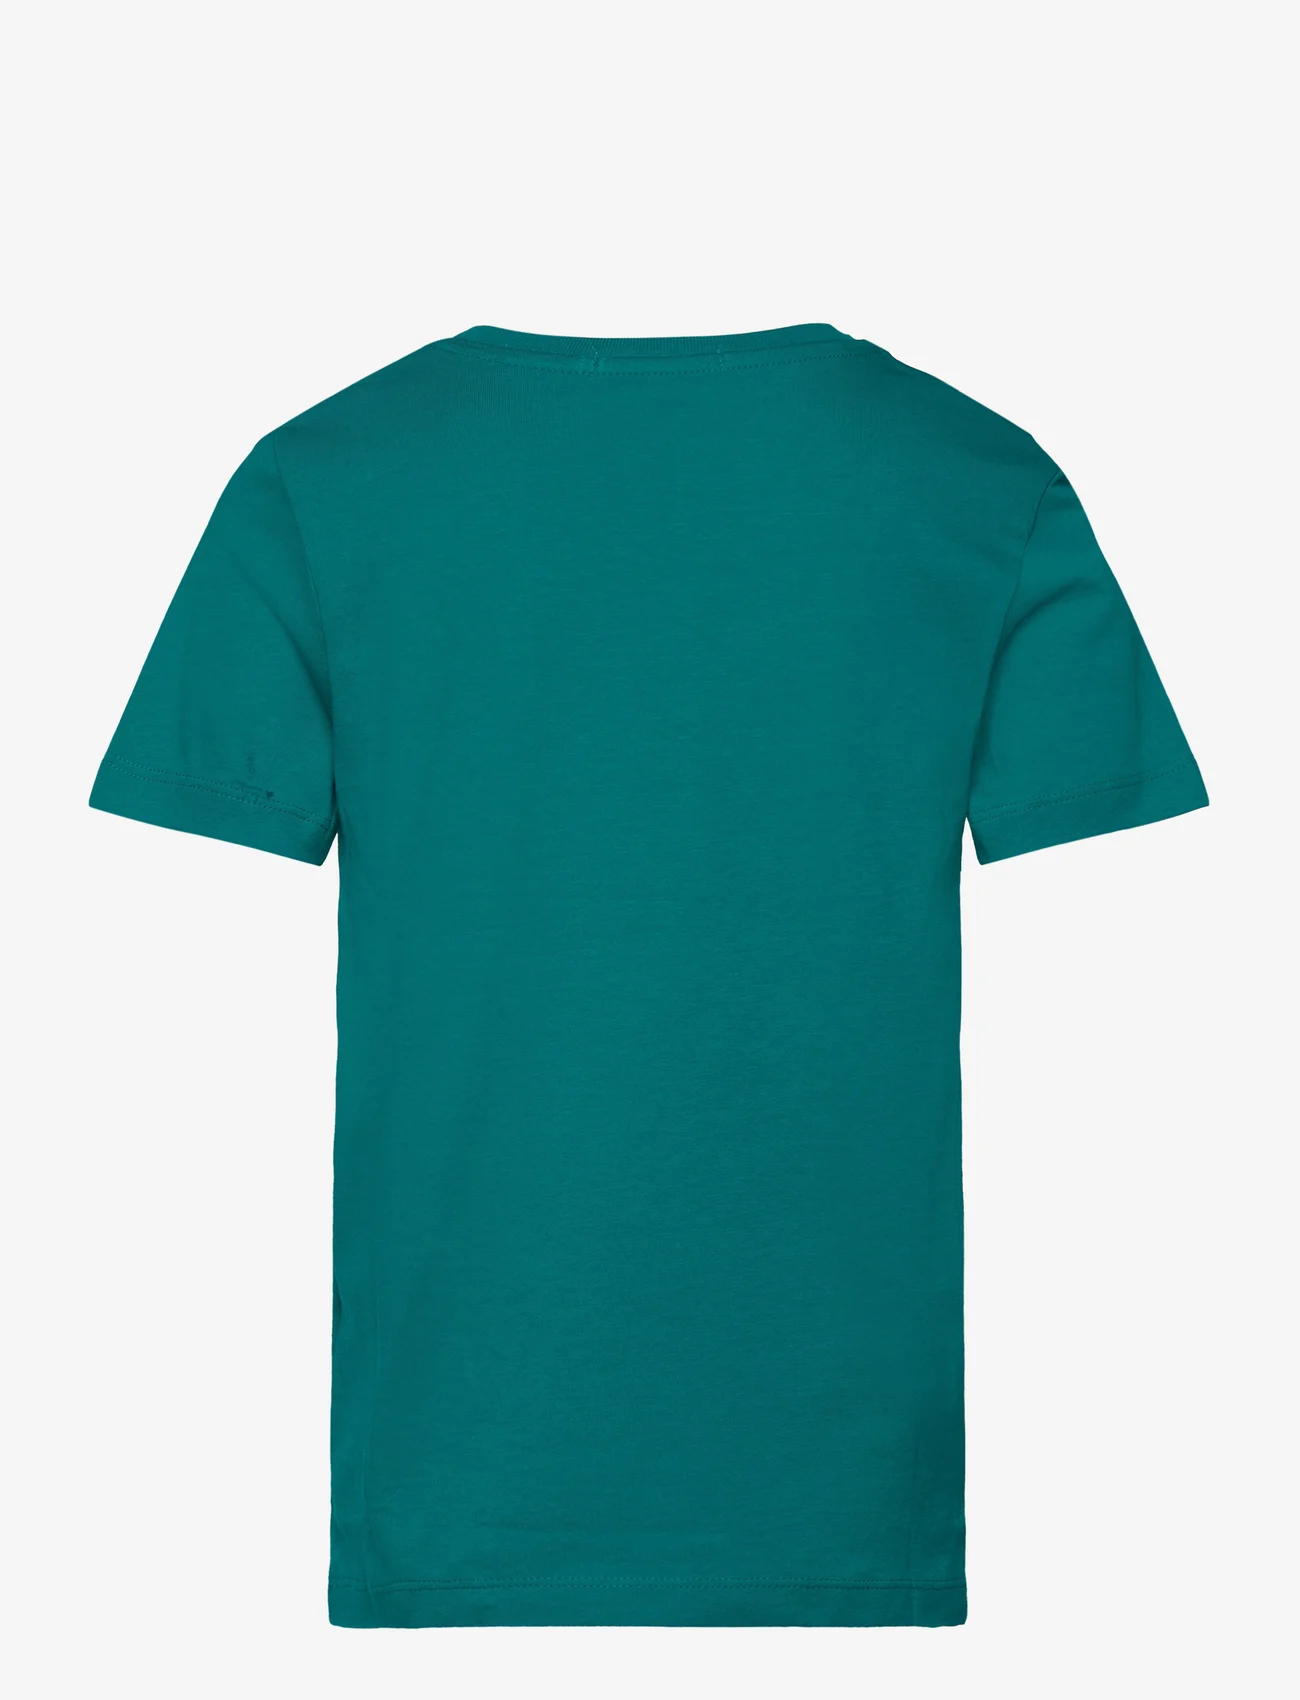 Calvin Klein - CK MONOGRAM SS T-SHIRT - kortärmade t-shirts - fanfare - 1